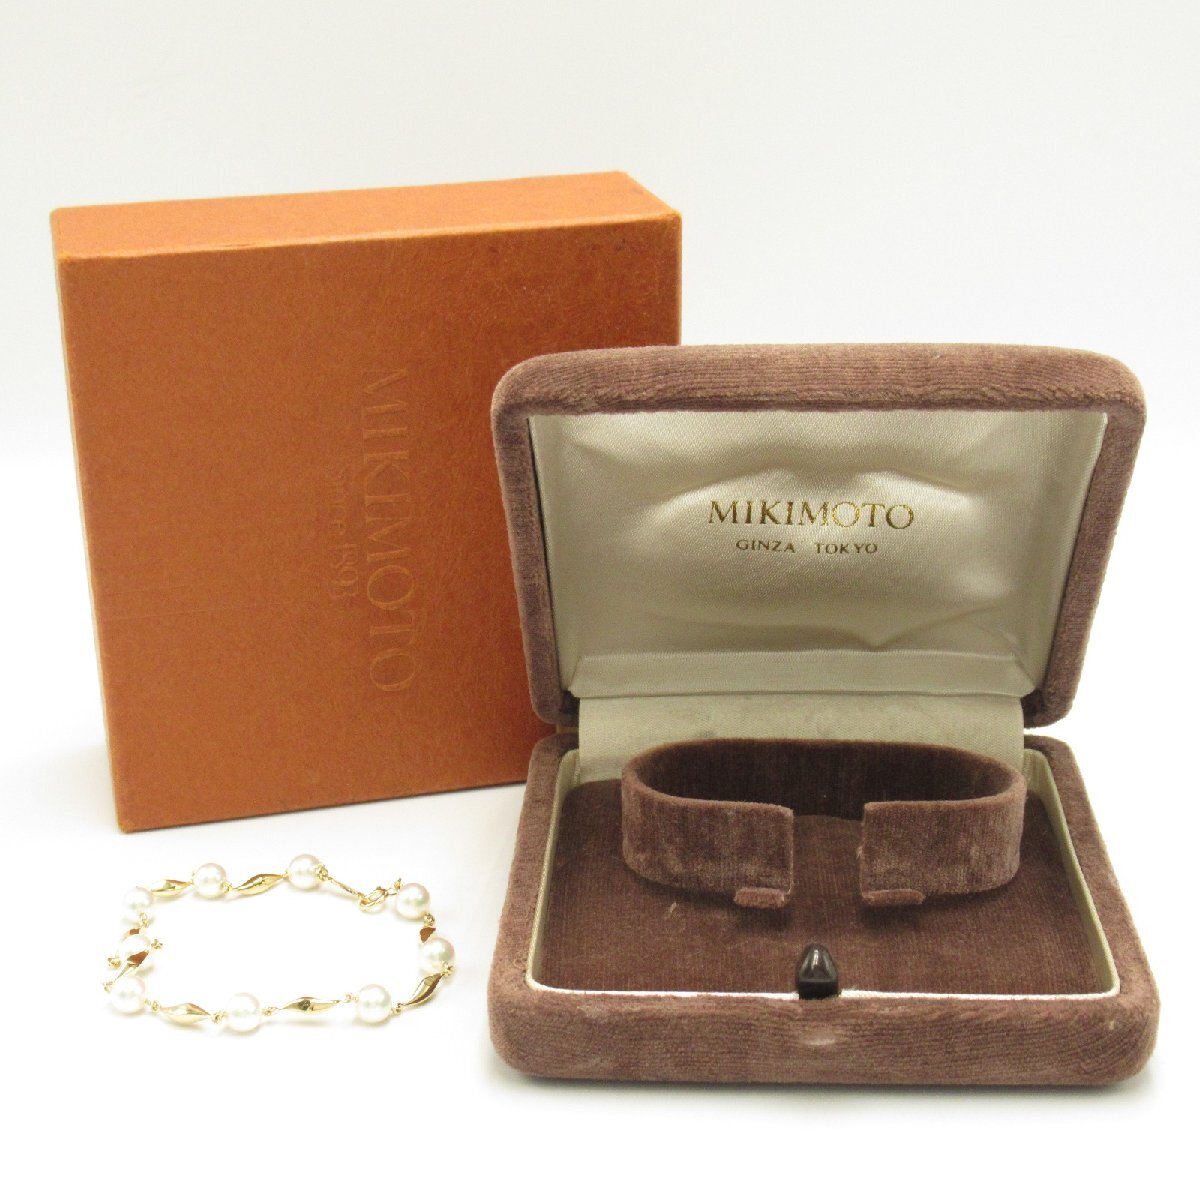  Mikimoto Akoya жемчуг браслет бренд off MIKIMOTO K18( желтое золото ) браслет K18 б/у женский 